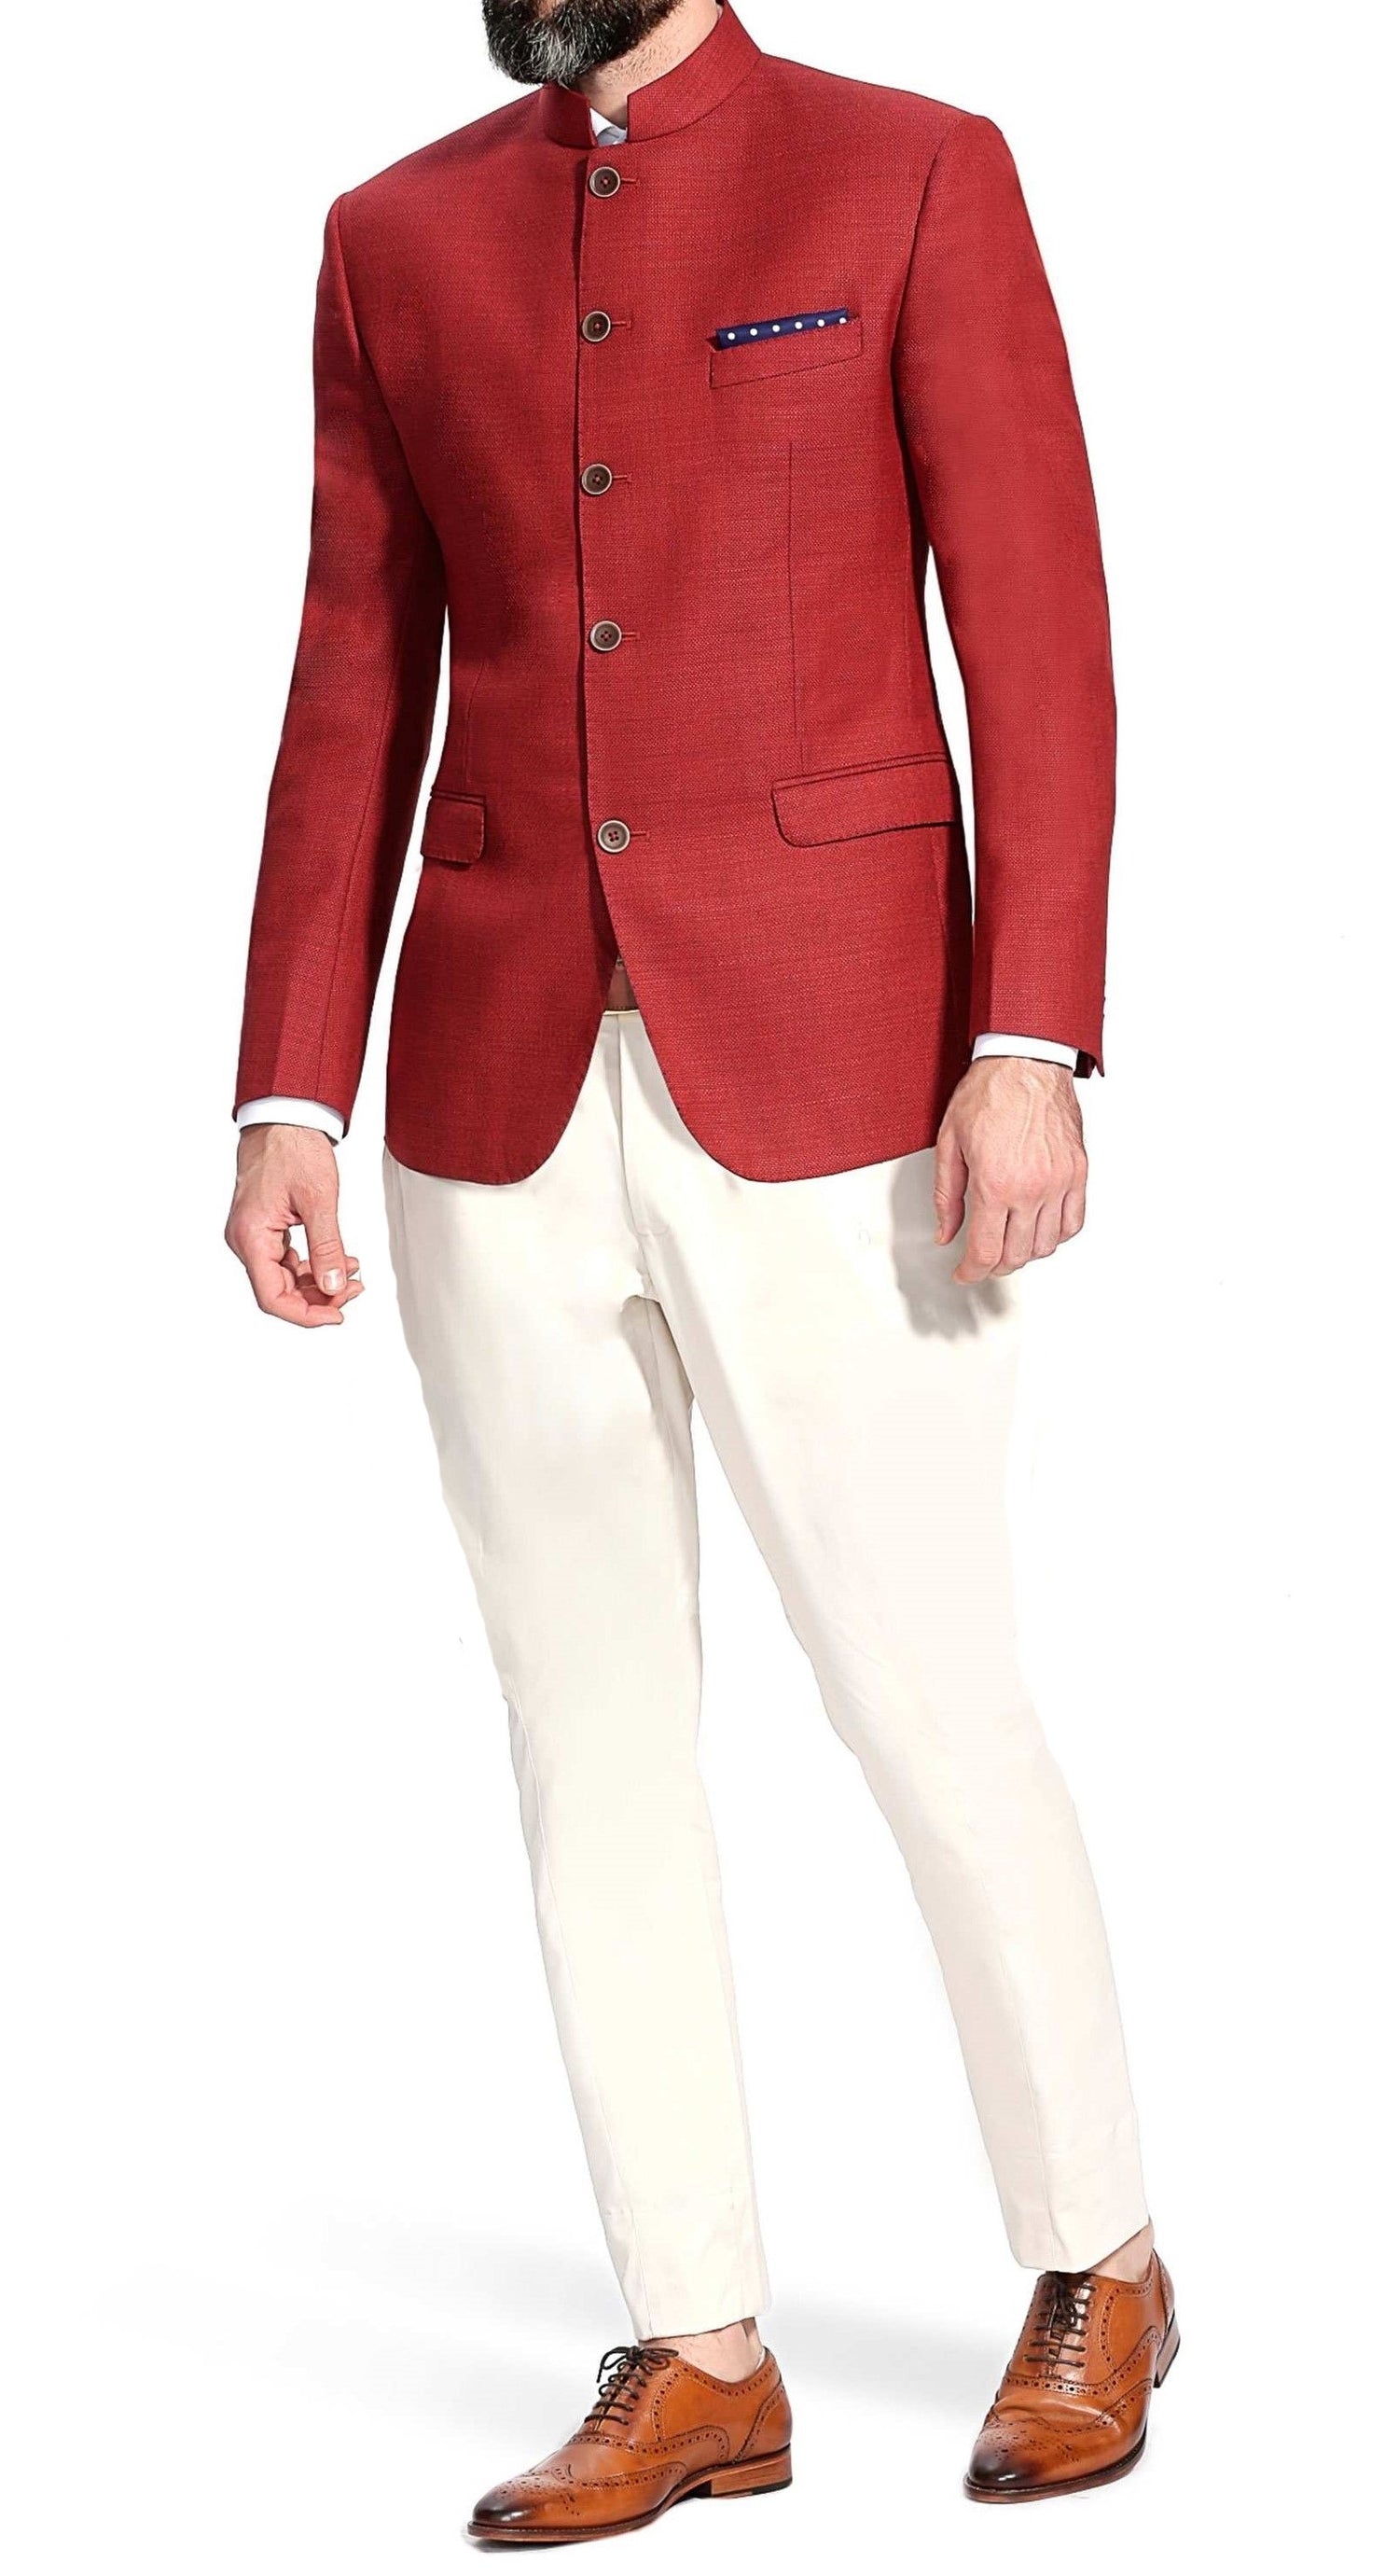 Red Color Bandhgala Chinese/Mandarin Collar Jodhpuri Suit